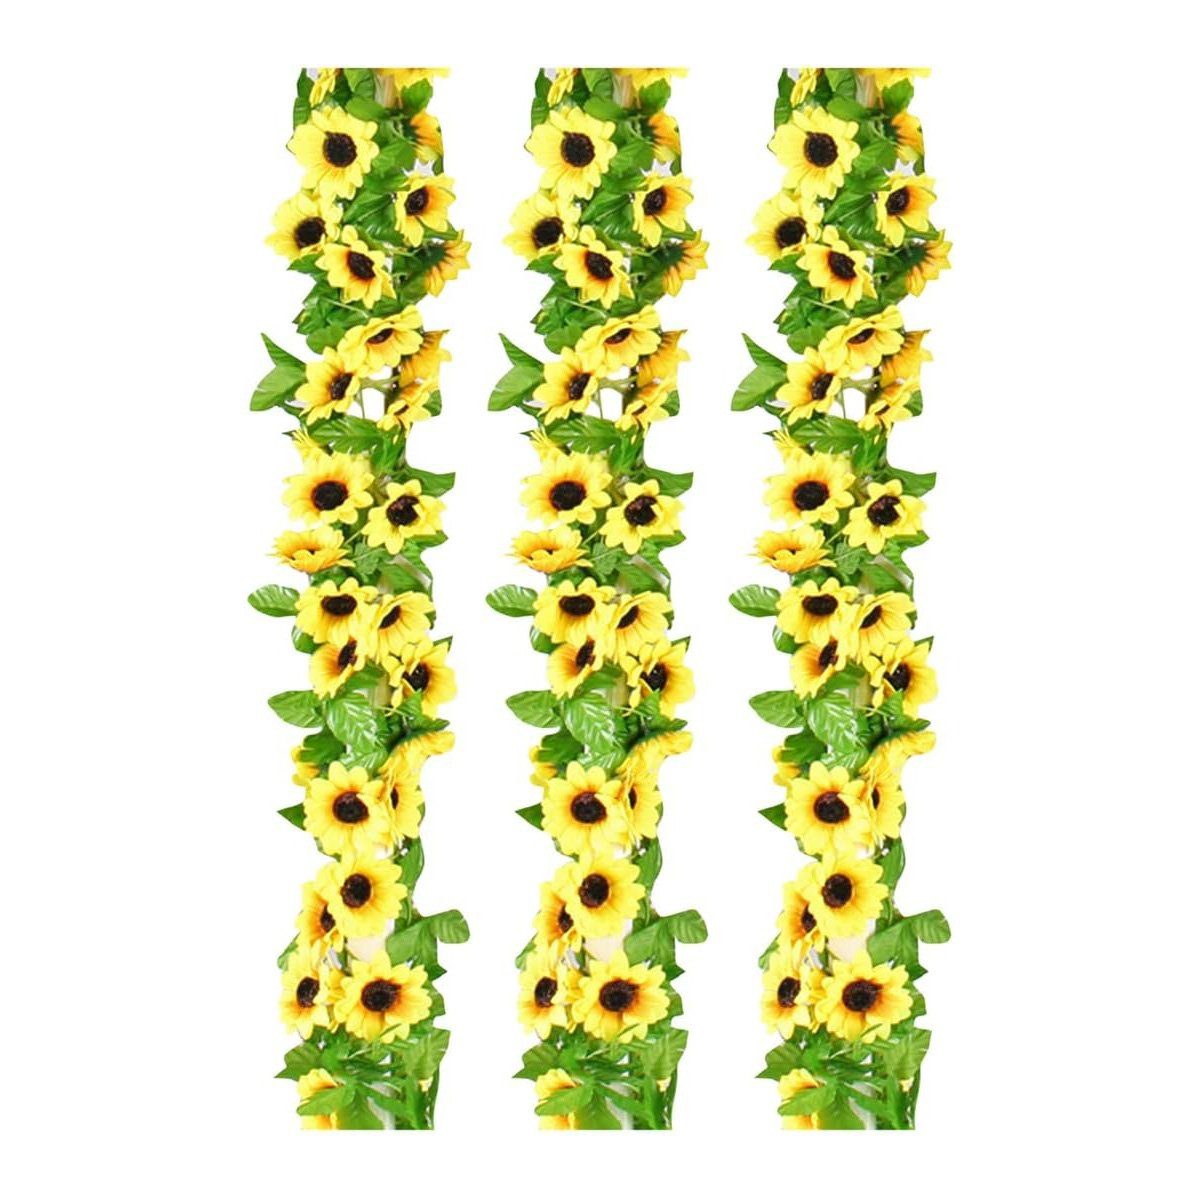 Kunstblume 3 Stück künstliche Blumen, Sonnenblumenrebe, Girlande, yozhiqu, Seidenprodukte, hängende Blumenarrangements, Raumdekoration